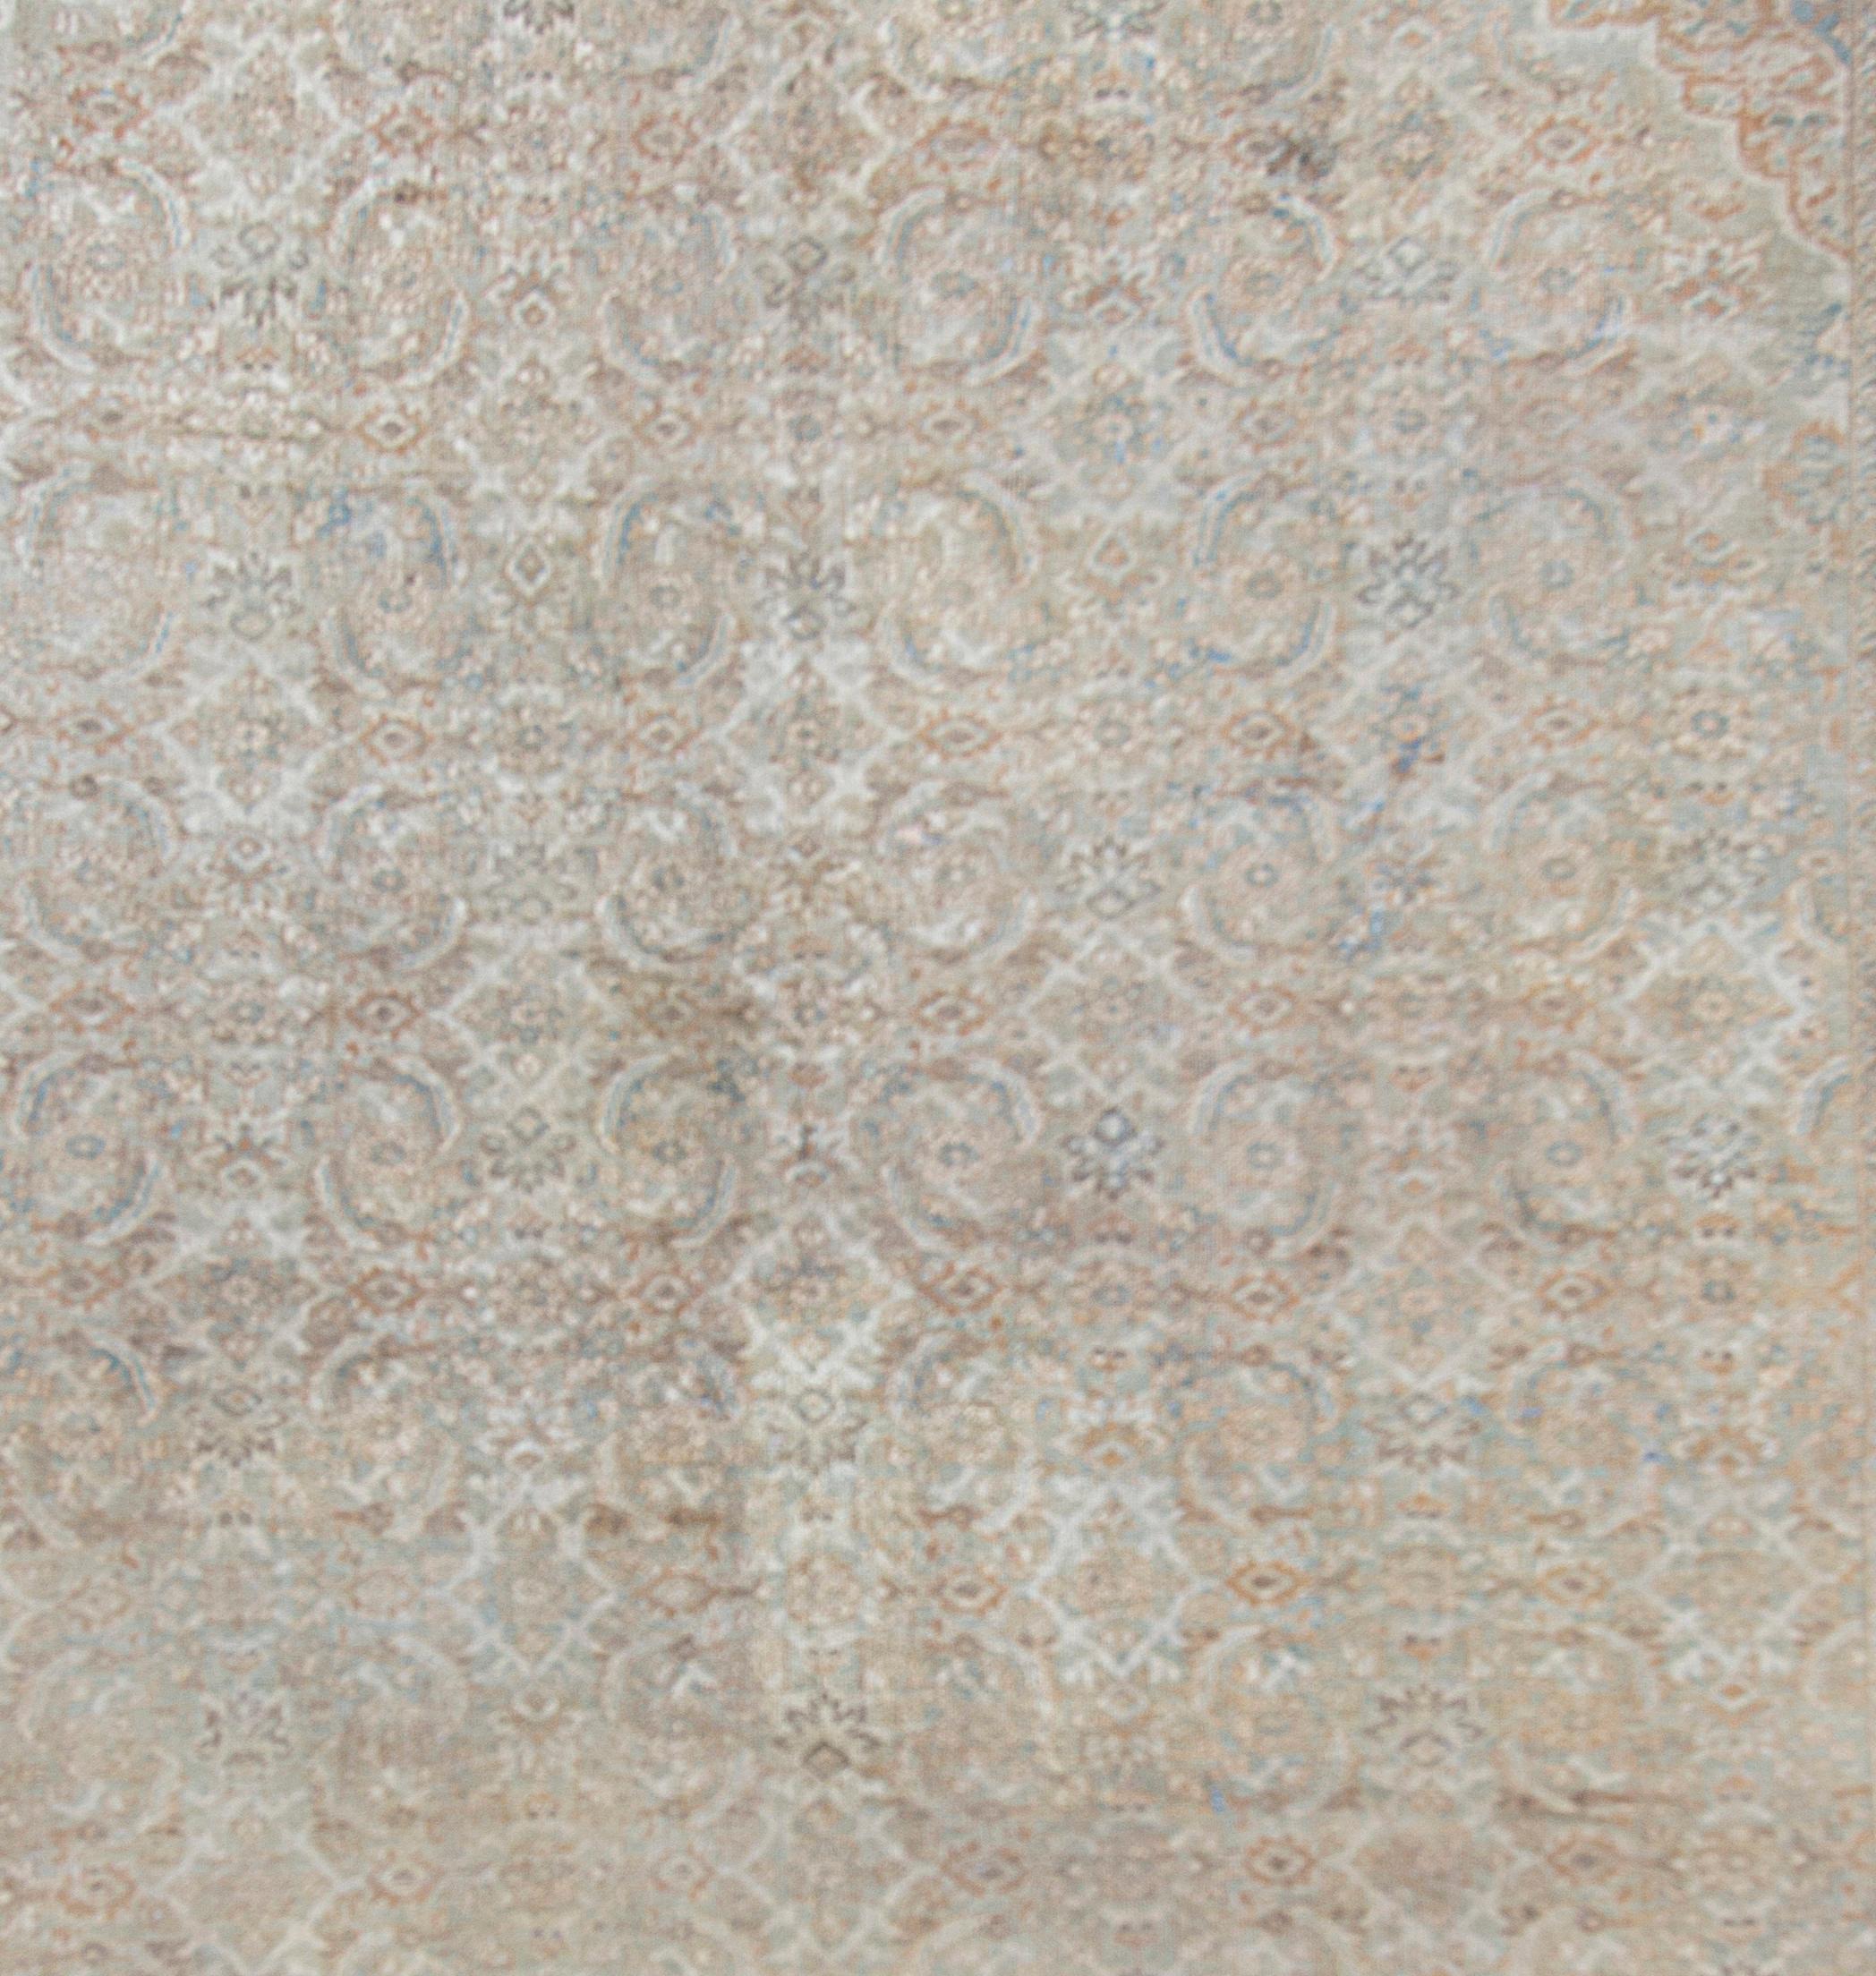 Antiker persischer Sultanabad-Teppich. Größe: 10'6 x 13'5. Eine äußerst subtile und zurückhaltende Farbgebung kennzeichnet diesen nordwestpersischen Stadtteppich, der wahrscheinlich von der Firma Ziegler aus Manchester, England, stammt. Das